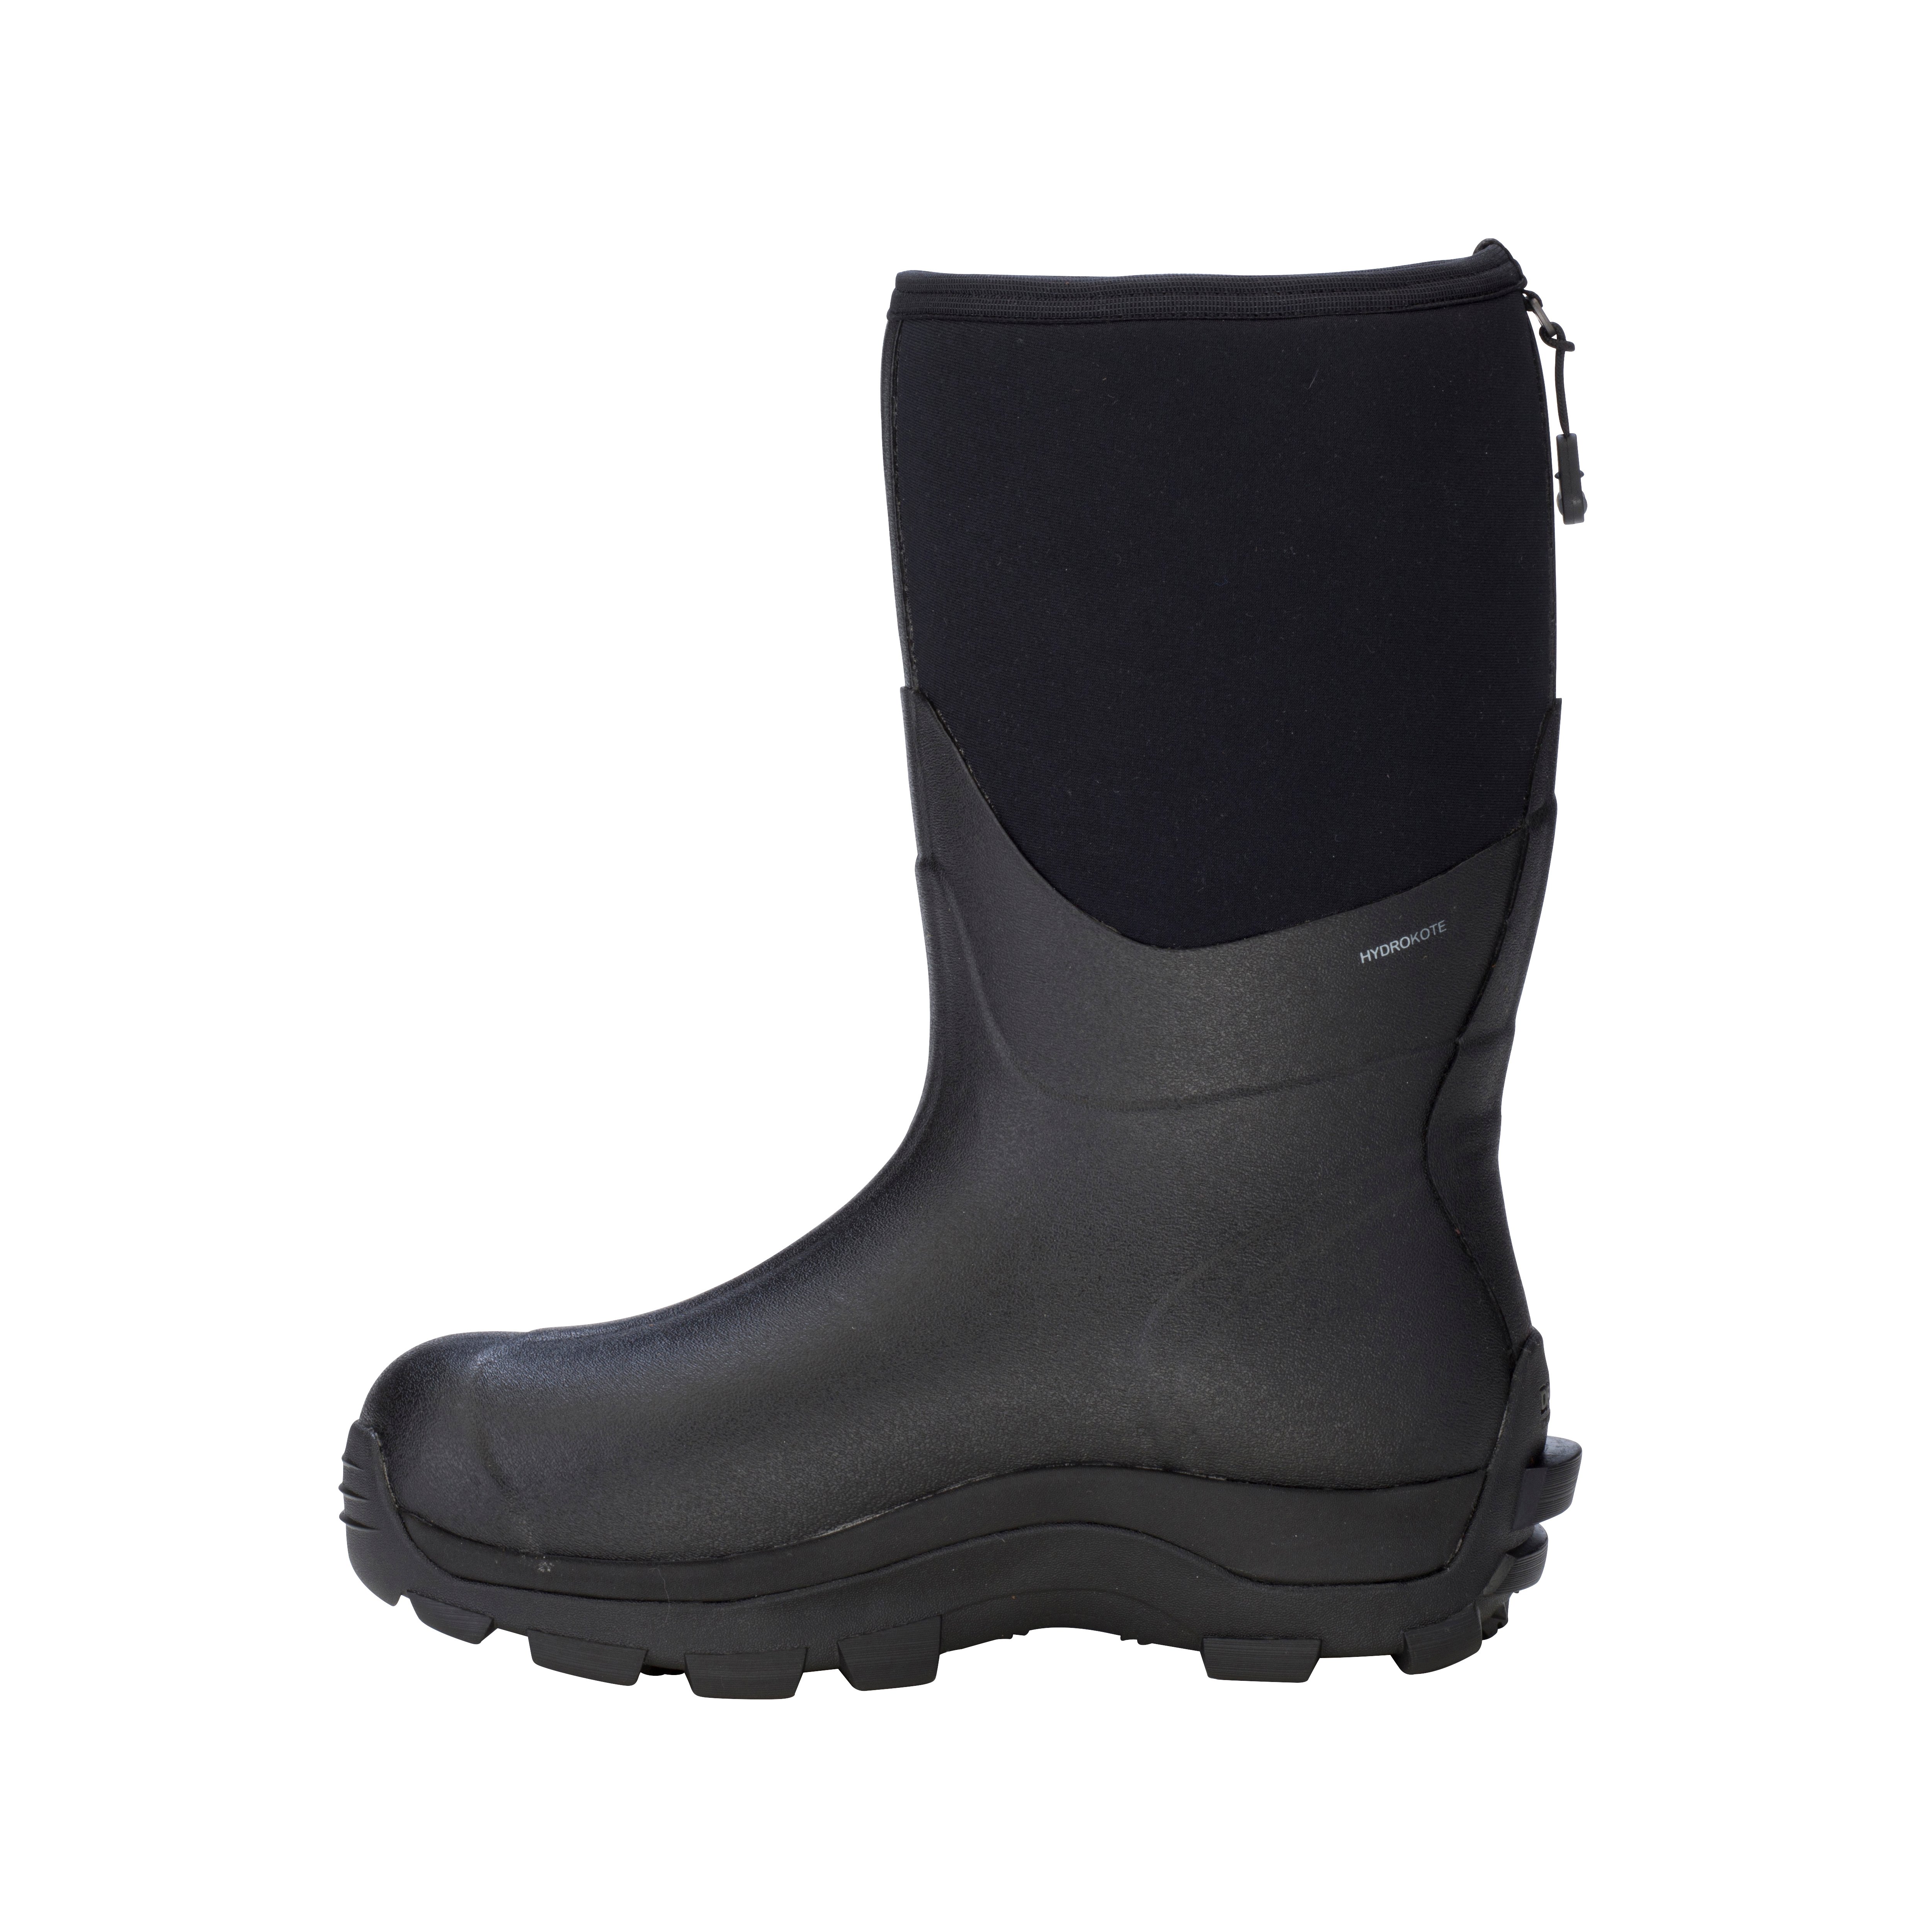 Arctic Storm Men\'s Mid – Dryshod Waterproof Boots